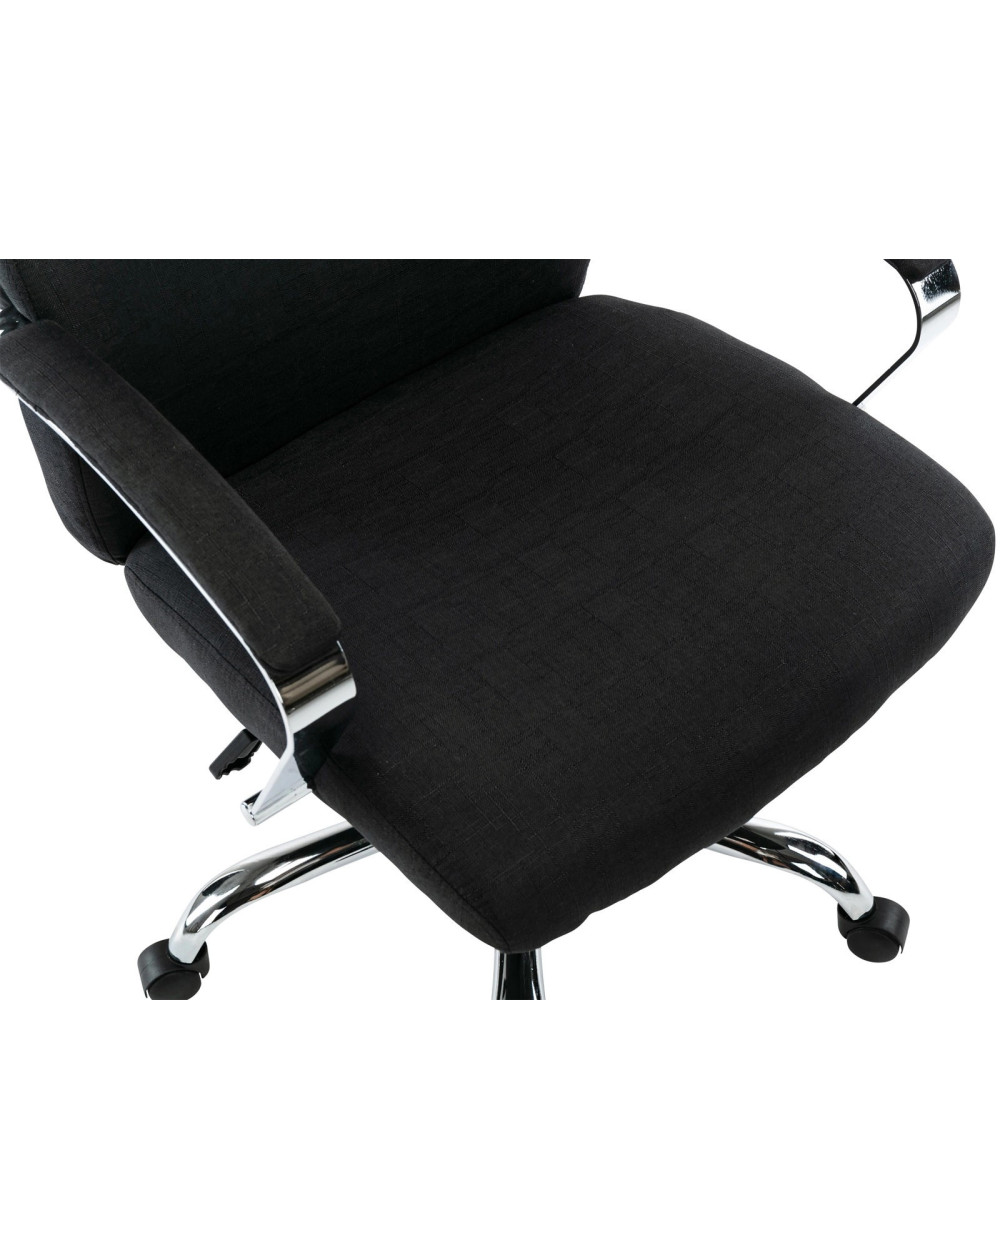 Cadeira Bilbau DUDECO - Material do assento: Pele Sintética
Material da estrutura: aço reforçado
Altura total: 97 cm
Profundidad